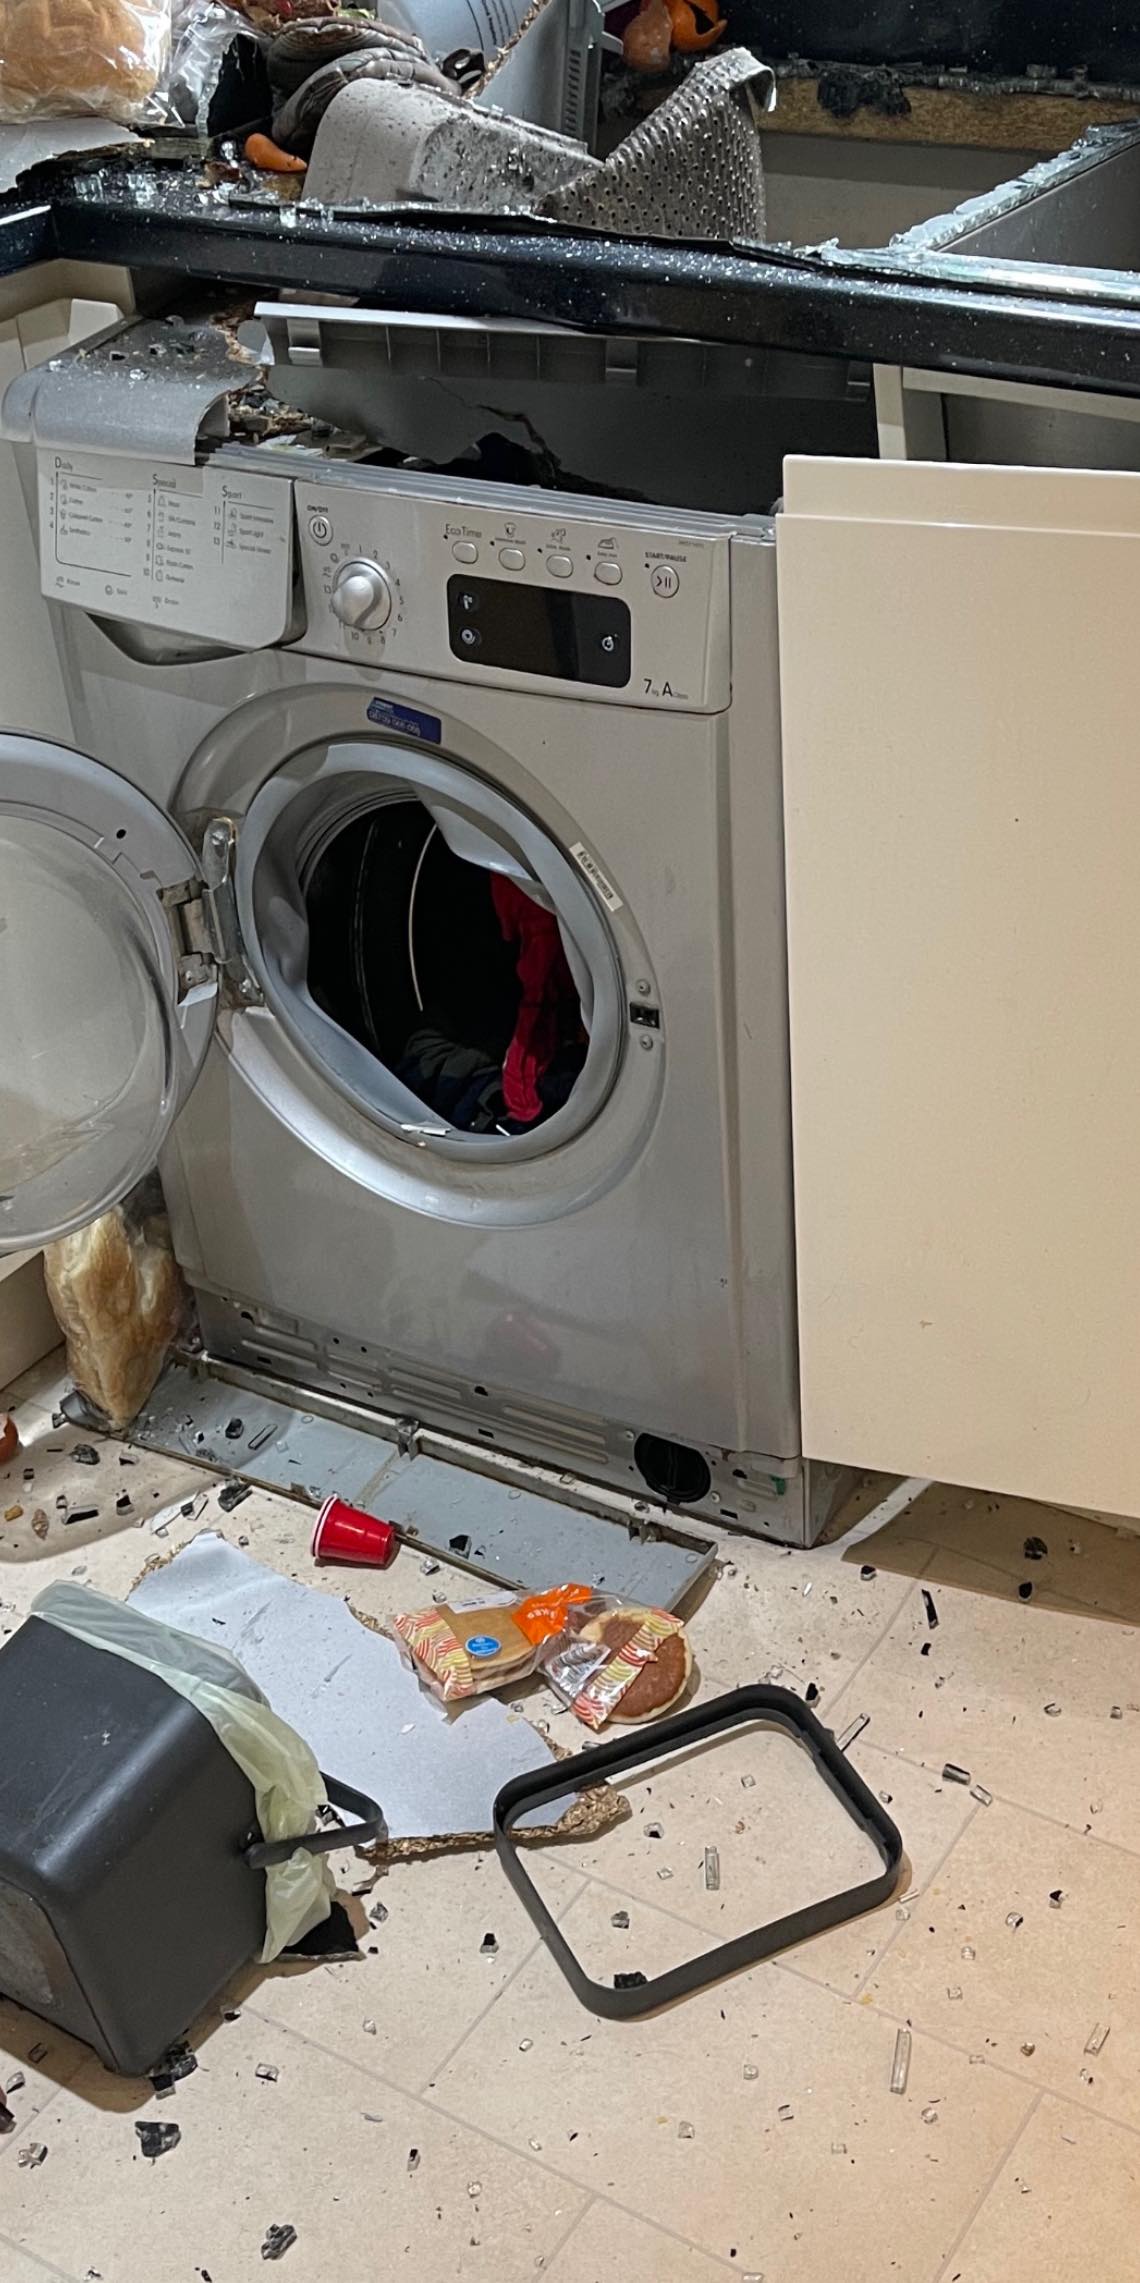 Laura Birrell's washing machine caused destroyed her kitchen countertop (Laura Birrell)